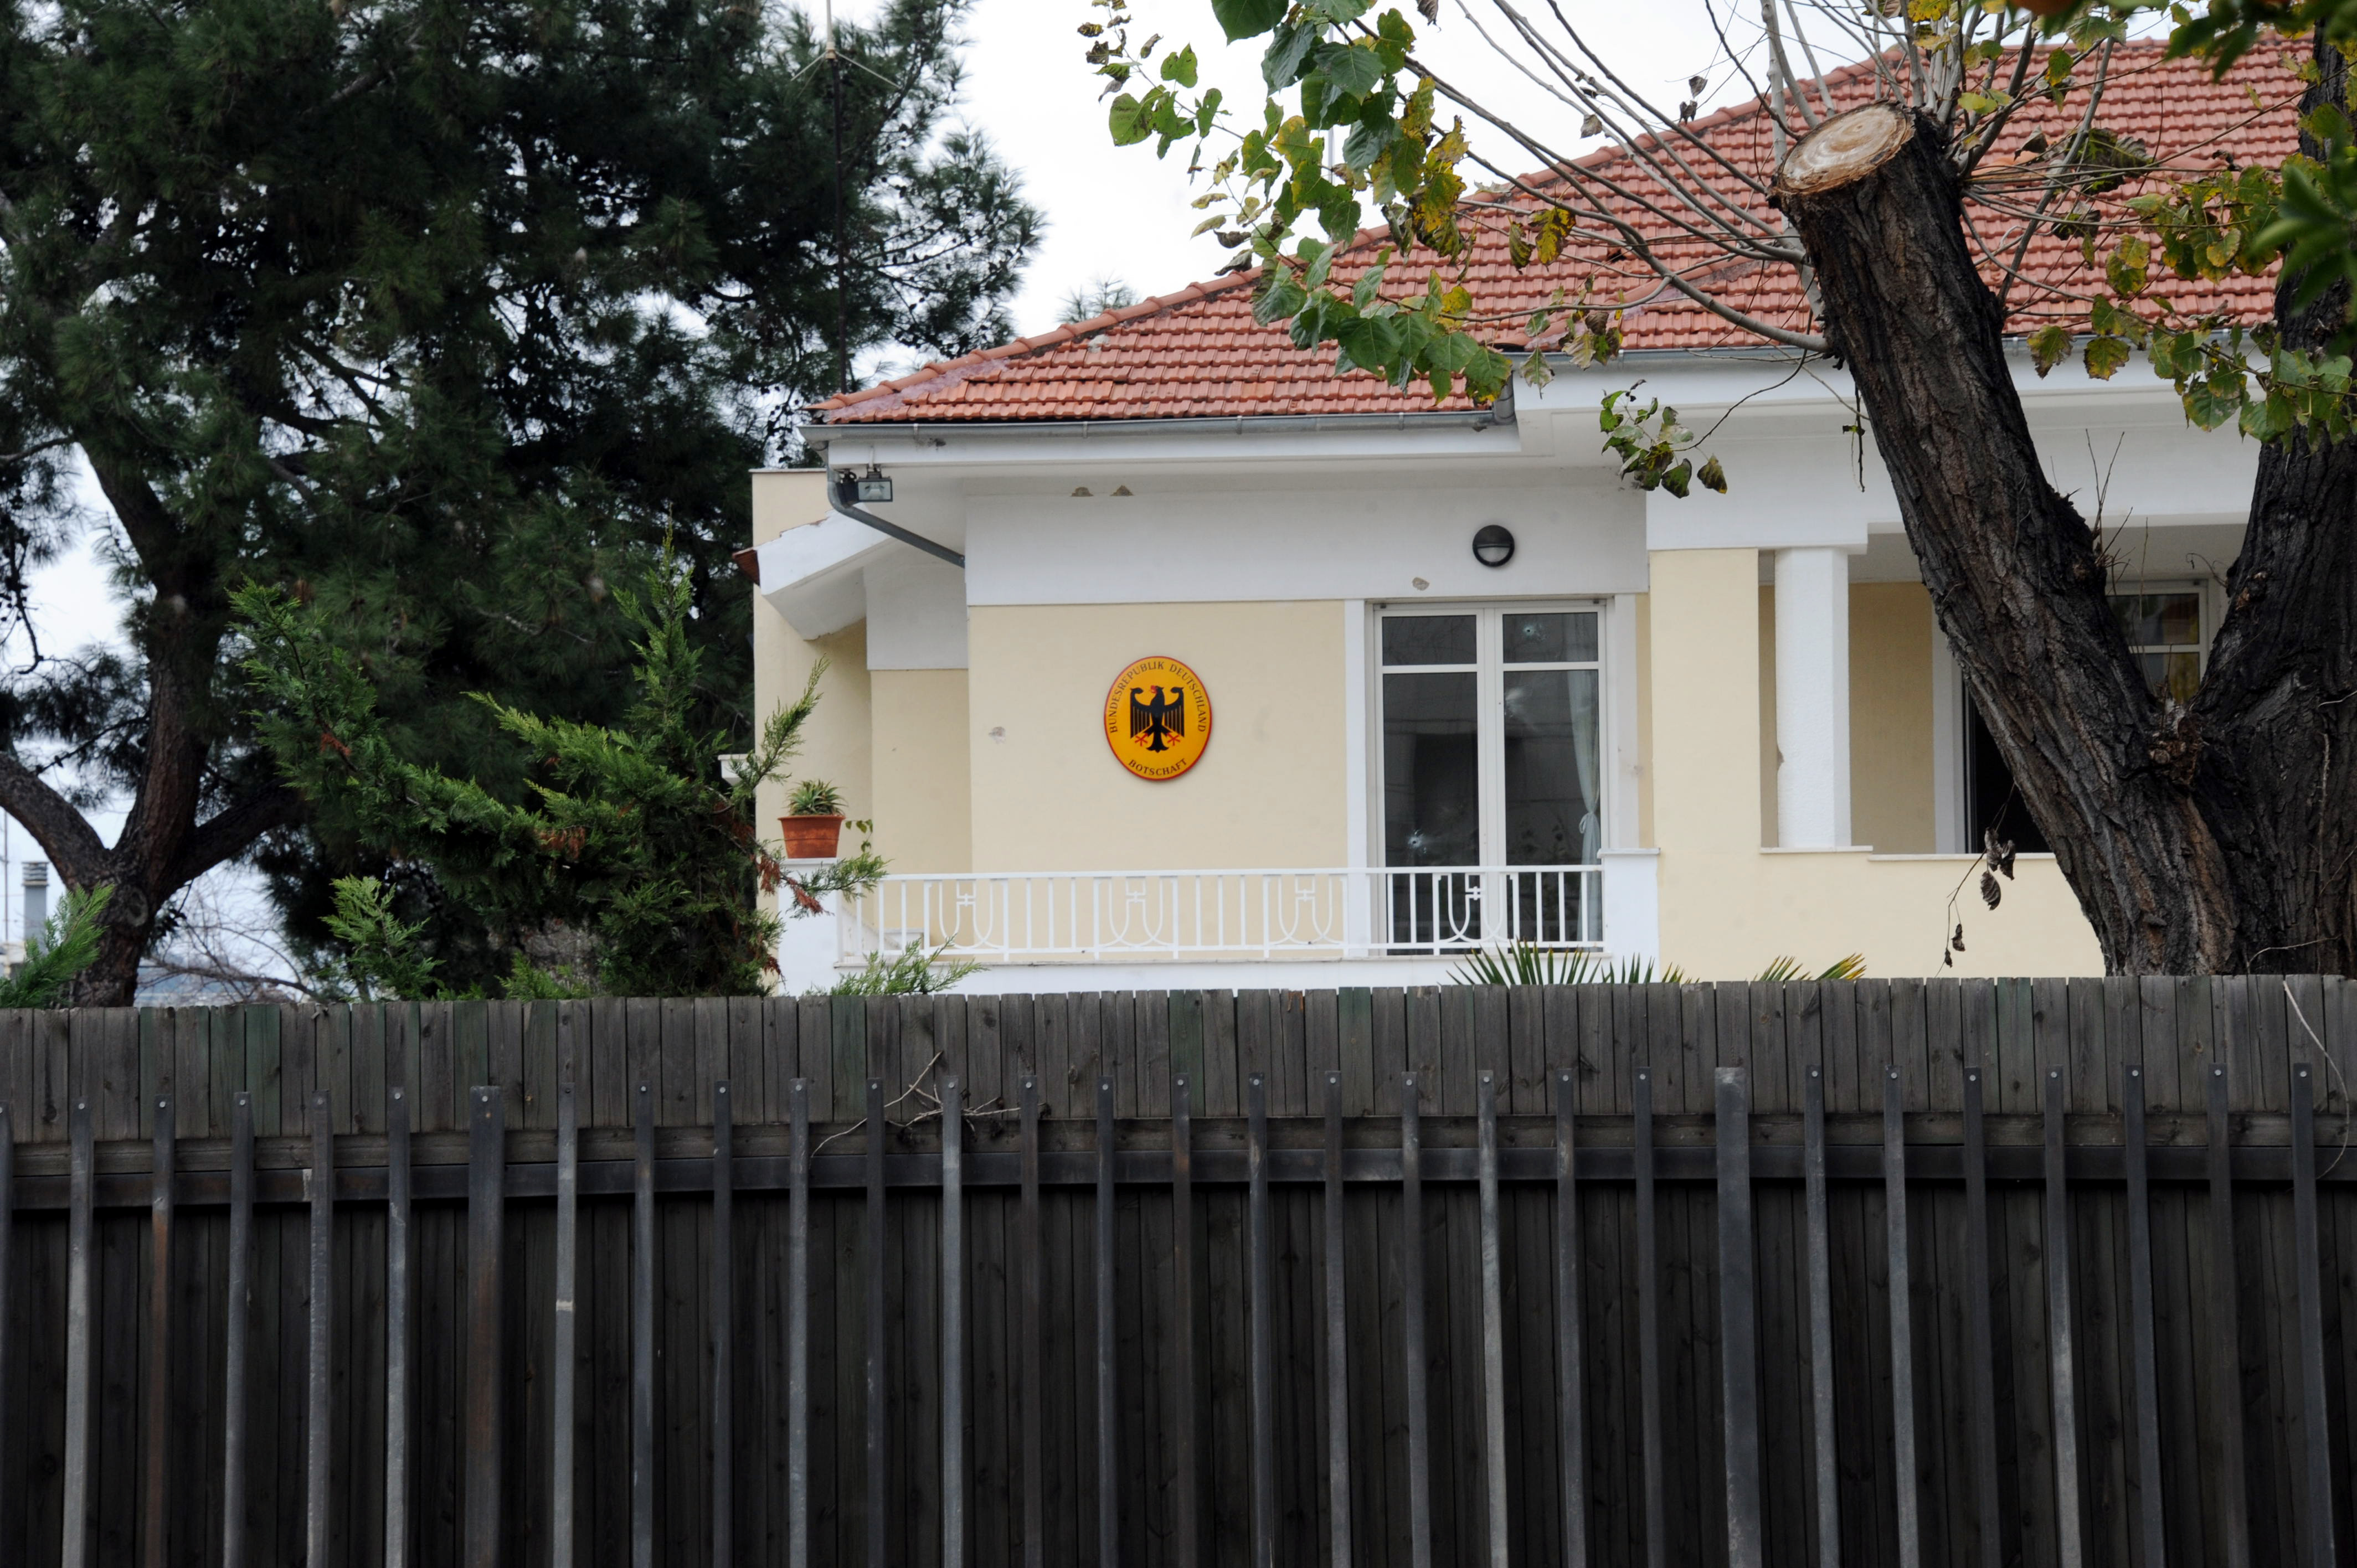 Η Ομάδα Λαϊκών Αγωνιστών ανέλαβε την ευθύνη για το χτύπημα στην οικία του Γερμανού πρέσβη – Οι ίδιοι είχαν αναλάβει την ευθύνη για την επίθεση στη ΝΔ